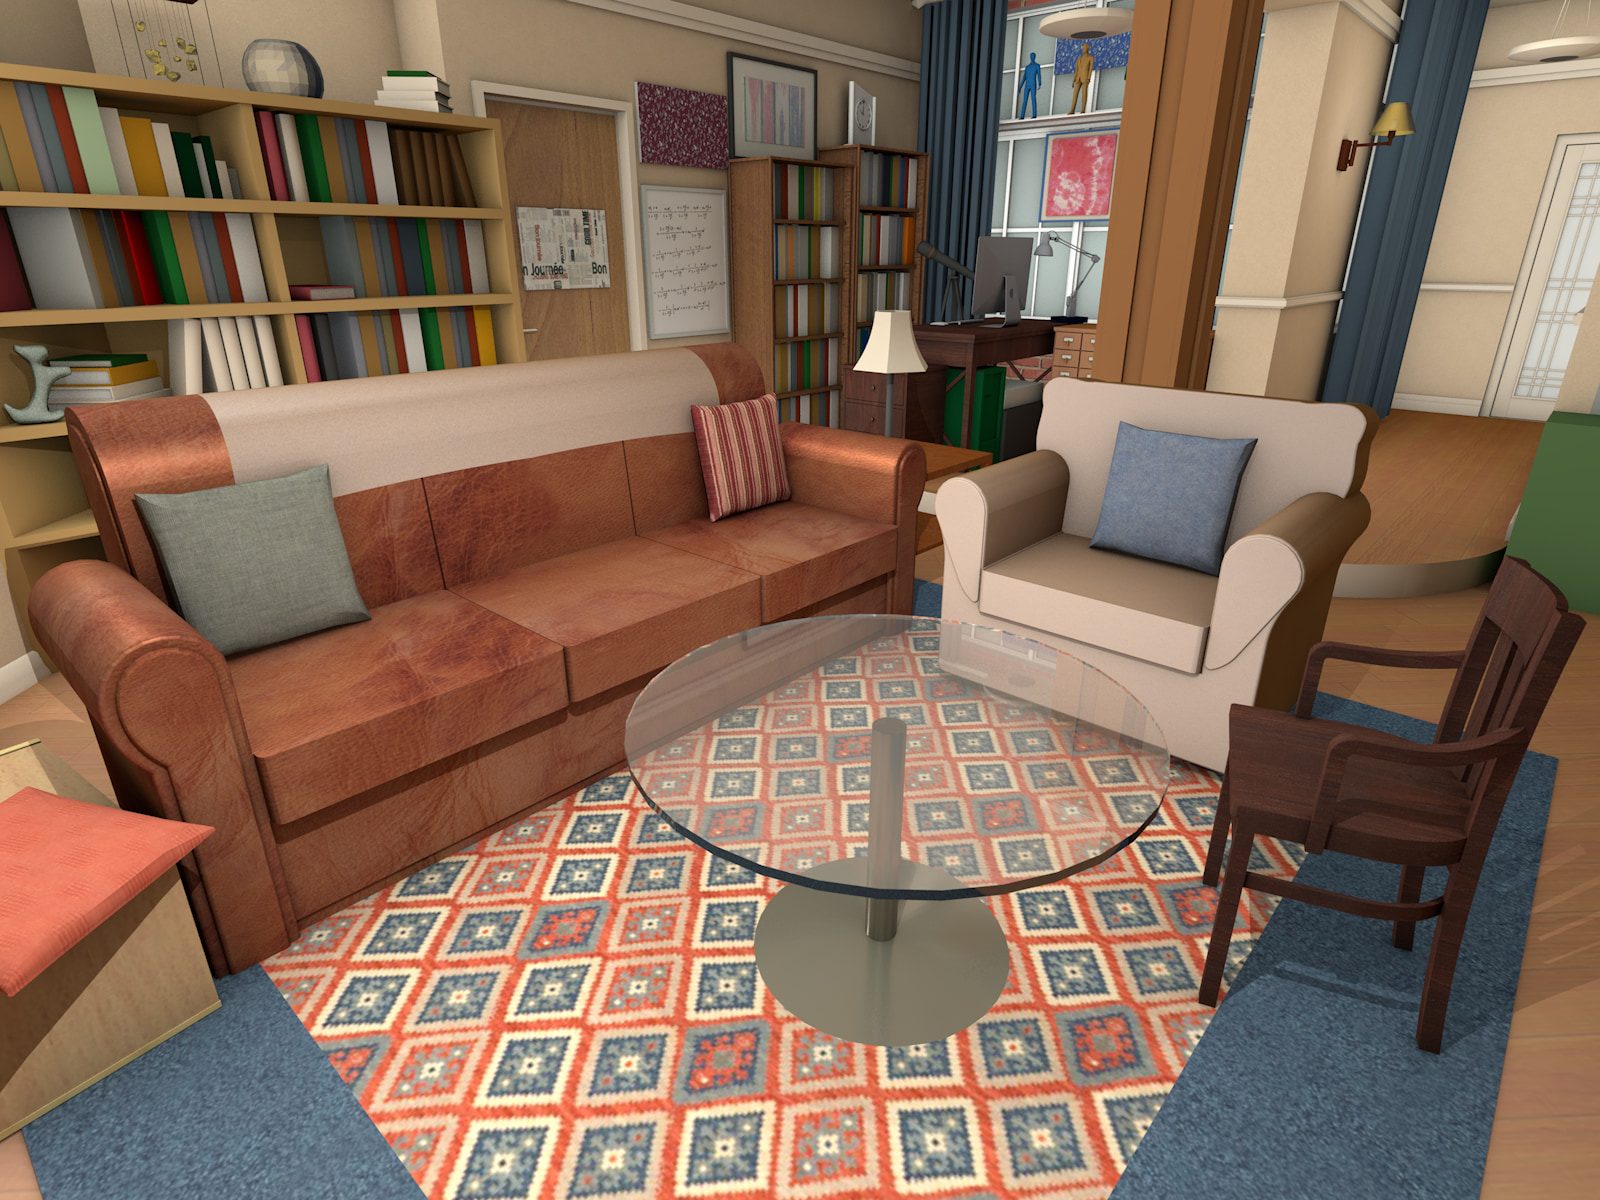 The Big Bang Theory Virtual Apartment